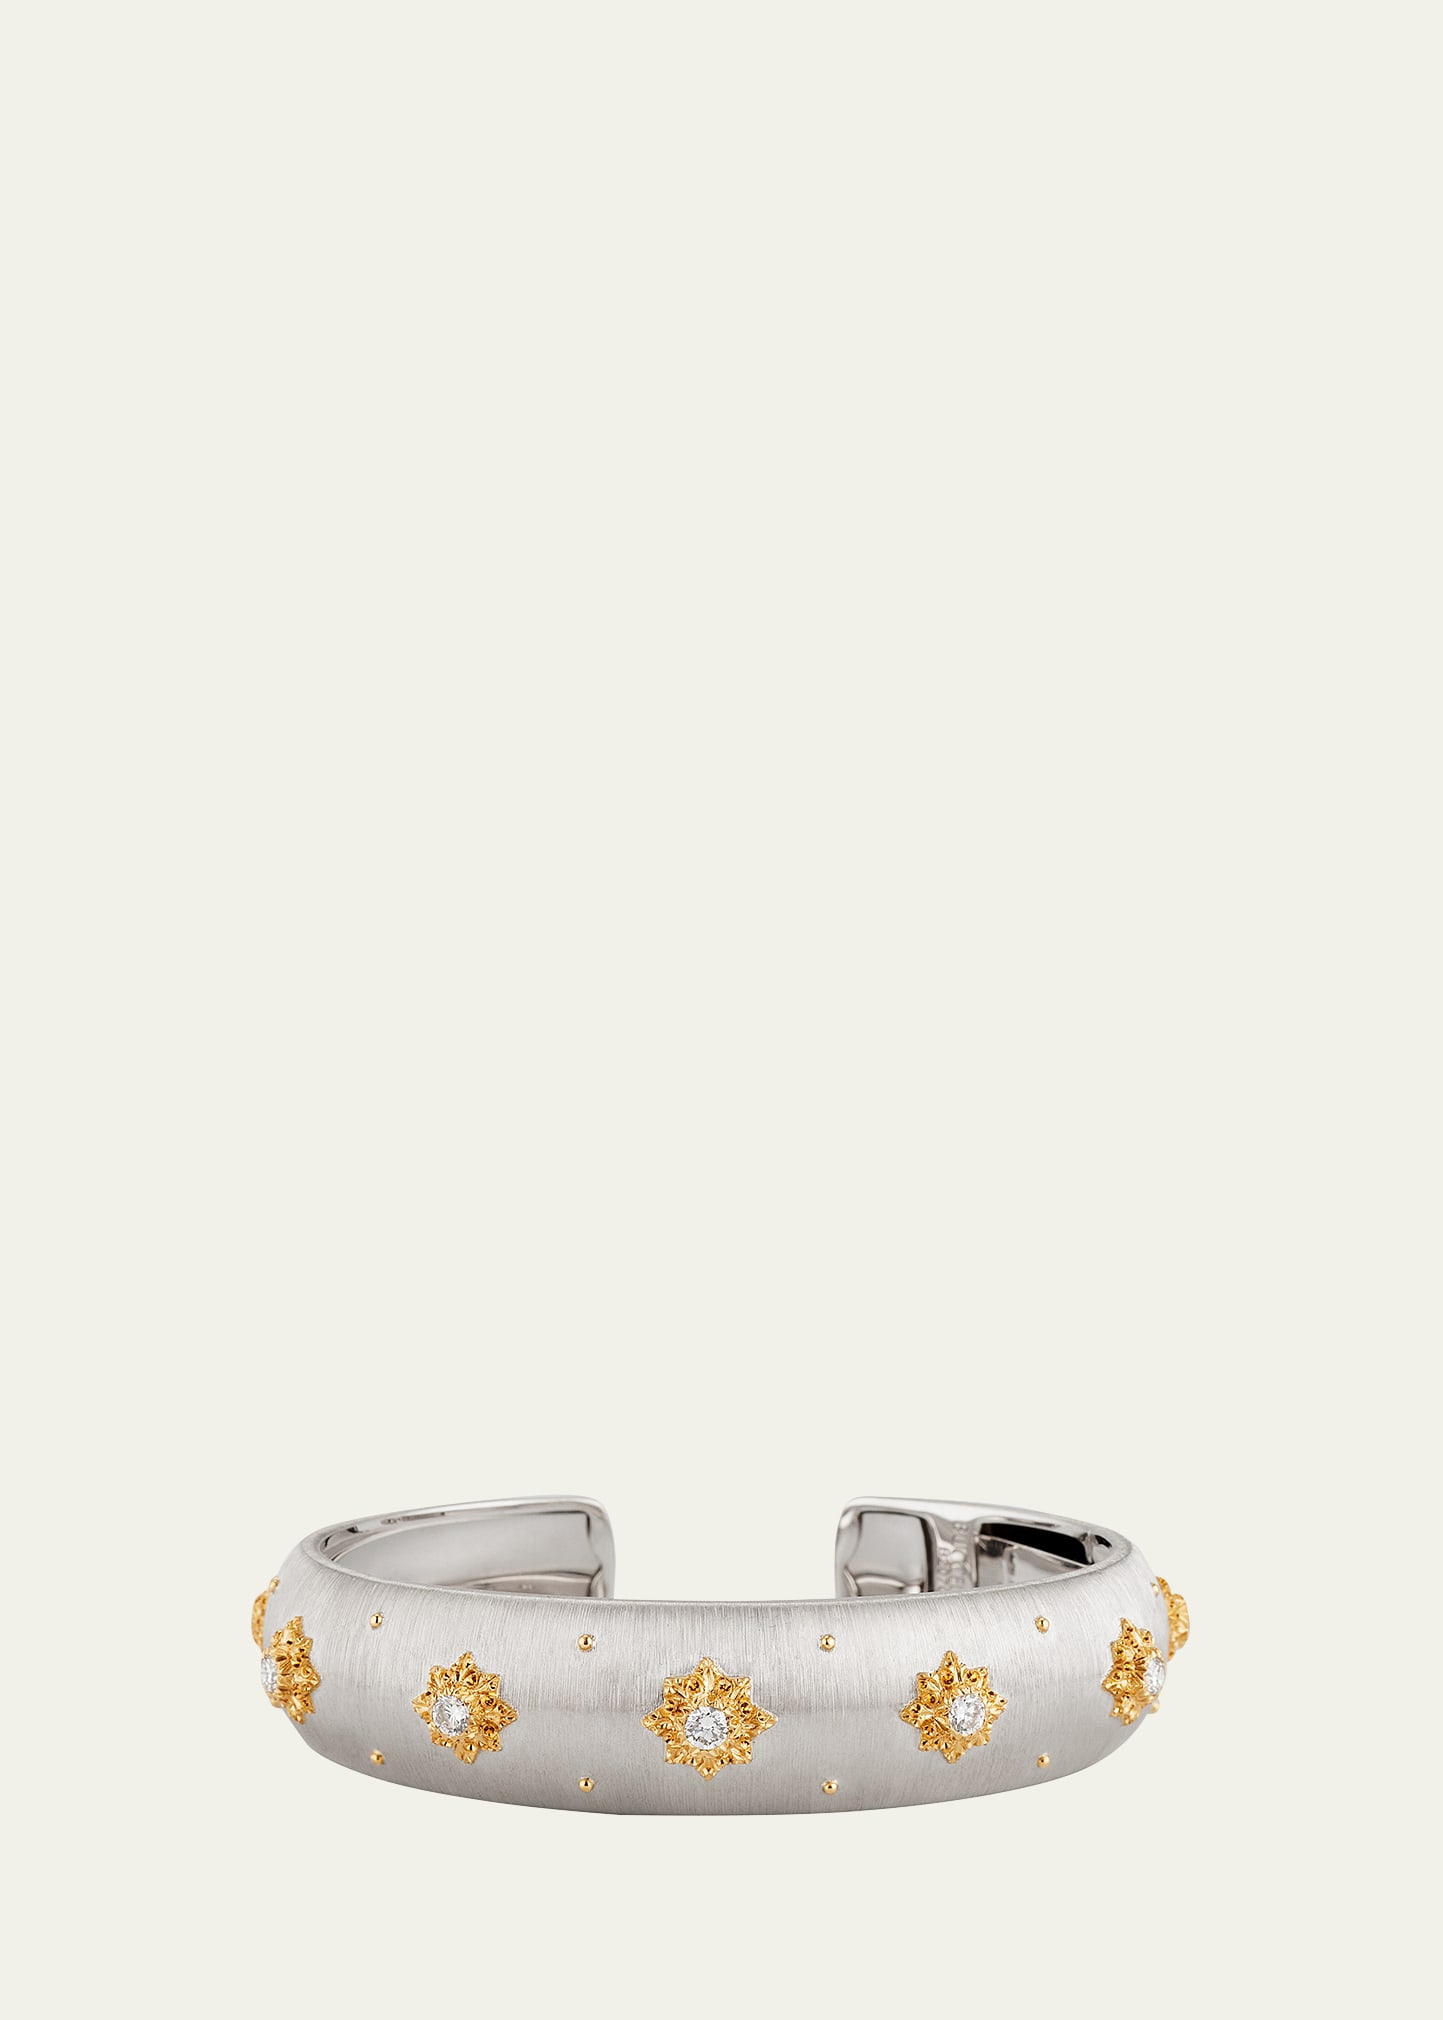 18K White Gold Macri Classica Cuff Bracelet with Diamonds